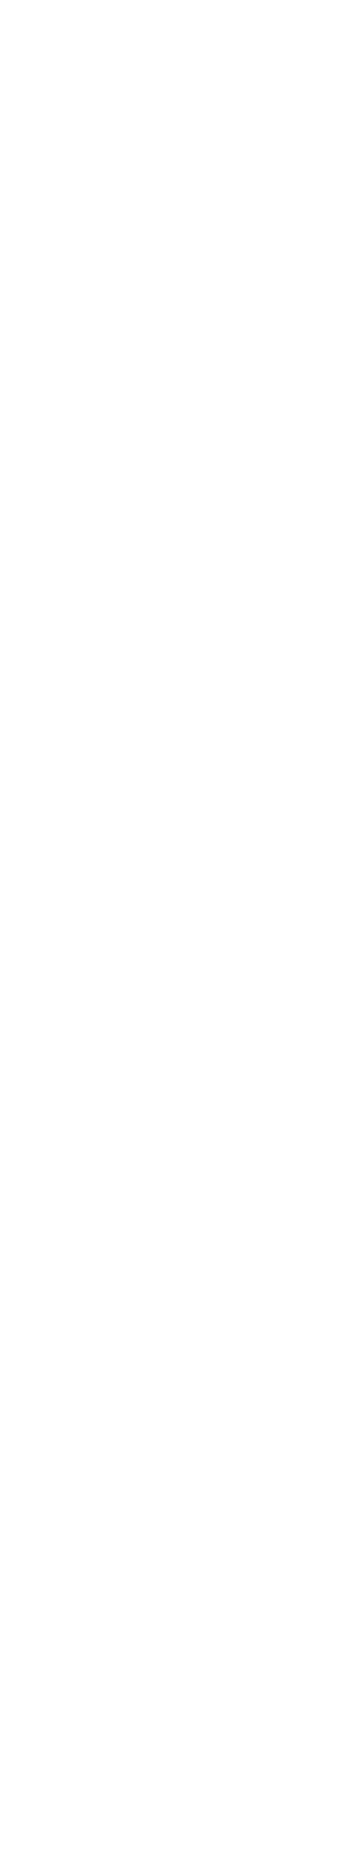 Mentions légales Déclaration CNIL Conformément à la loi « informatique et libertés » du 6 janvier 1978 modifiée en 2004, vous bénéficiez d’un droit d’accès et de rectification aux informations qui vous concernent, que vous pouvez exercer en vous adressant à la ALTIARENA 1 route de Montredon 43000 Le Puy-en-Velay Tel: 04 71 57 88 51 Mail: contact@altiarena.fr SIRET 87872923500027 TVA :FR93878729235 « Les informations recueillies font l’objet d’un traitement informatique destiné à faciliter le traitement de votre dossier. . Les destinataires des données sont : ALTIARENA 1 route de Montredon 43000 Le Puy-en-Velay Tel: 04 71 57 88 51 Mail: contact@altiarena.fr SIRET 87872923500027 TVA :FR93878729235 Exploitation du site ALTIARENA 1 route de Montredon 43000 Le Puy-en-Velay Tel: 04 71 57 88 51 Mail: contact@altiarena.fr SIRET 87872923500027 TVA :FR93878729235 Vous pouvez également, pour des motifs légitimes, vous opposer au traitement des données vous concernant. Conformément aux articles 39 et suivants de la loi n° 78-17 du 6 janvier 1978 modifiée en 2004 relative à l’informatique, aux fichiers et aux libertés, toute personne peut obtenir communication et, le cas échéant, rectification ou suppression des informations la concernant, en s’adressant au service : ALTIARENA 1 route de Montredon 43000 Le Puy-en-Velay Tel: 04 71 57 88 51 Mail: contact@altiarena.fr SIRET 87872923500027 TVA :FR93878729235 Ce site utilise Google Analytics, un service d’analyse de site Internet fourni par Google Inc. (« Google »). Google Analytics utilise des cookies, qui sont des fichiers texte placés sur votre ordinateur, pour aider le site internet à analyser l’utilisation du site par ses utilisateurs. Les données générées par les cookies concernant votre utilisation du site (y compris votre adresse IP) seront transmises et stockées par Google sur des serveurs situés aux Etats-Unis. Google utilisera cette information dans le but d’évaluer votre utilisation du site, de compiler des rapports sur l’activité du site à destination de son éditeur et de fournir d’autres services relatifs à l’activité du site et à l’utilisation d’Internet. Google est susceptible de communiquer ces données à des tiers en cas d’obligation légale ou lorsque ces tiers traitent ces données pour le compte de Google, y compris notamment l’éditeur de ce site. Google ne recoupera pas votre adresse IP avec toute autre donnée détenue par Google. Vous pouvez désactiver l’utilisation de cookies en sélectionnant les paramètres appropriés de votre navigateur. Cependant, une telle désactivation pourrait empêcher l’utilisation de certaines fonctionnalités de ce site. En utilisant ce site Internet, vous consentez expressément au traitement de vos données nominatives par Google dans les conditions et pour les finalités décrites ci-dessus. Réalisation conception site internet Sébastien RICHARD 17 rue Général Lafayette, 43000 Le Puy-en-Velay 0673751423 contact@pubetcom.fr siret 50188684000039 Hébergement : OVH SAS au capital de 10 059 500 € RCS Lille Métropole 424 761 419 00045 Code APE 6202A N° TVA : FR 22 424 761 419 Siège social : 2 rue Kellermann – 59100 Roubaix – France. Tous droits réservés: Alti arena L’ensemble de ce site relève des législations françaises et internationales sur le droit d’auteur et la propriété intellectuelle. Tous les droits de reproduction sont réservés, y compris pour les documents iconographiques et photographiques. Données personnelles D’une façon générale, vous pouvez visiter notre site sur Internet sans avoir à décliner votre identité et à fournir des informations personnelles vous concernant. Cependant, nous pouvons parfois vous demander des informations. Par exemple, pour traiter une commande, établir une correspondance, fournir un abonnement ou soumettre une candidature à un poste. Nous pouvons compléter ces informations pour conclure une transaction ou offrir un meilleur service.